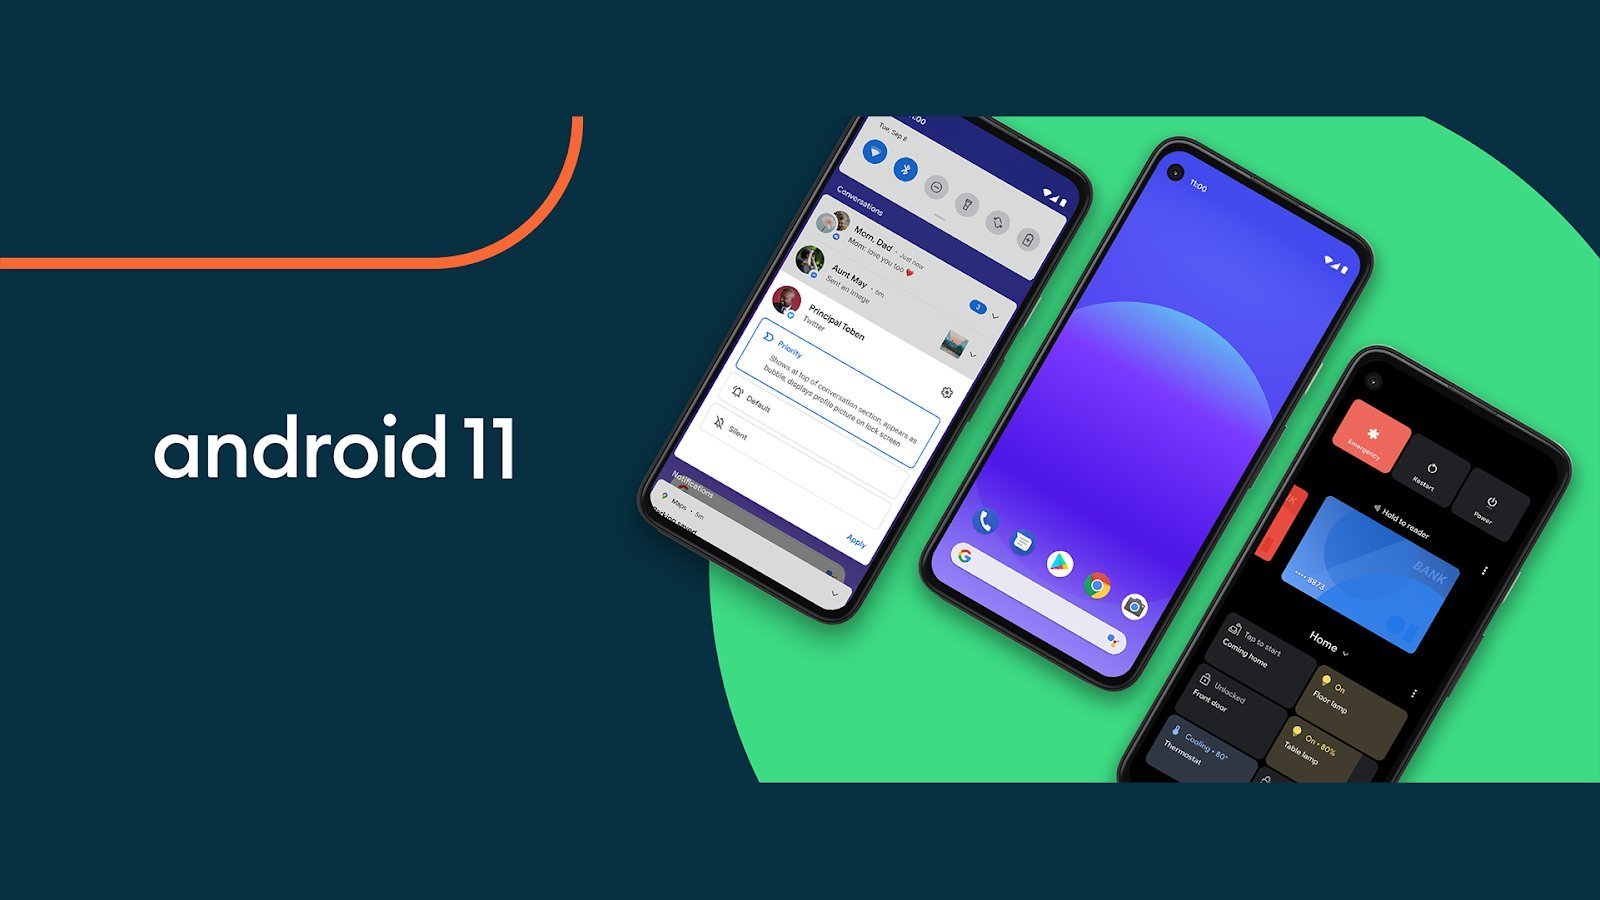 تحديث أندرويد 11 يصل إلى أجهزة Galaxy Note 10 بدأ تحديث واجهة المستخدم One UI 3.0 من شركة سامسونج بالوصول إلى أجهزة الشركة القديمة، بدءًا من Galaxy Note 10 و Galaxy Note 10 Plus.